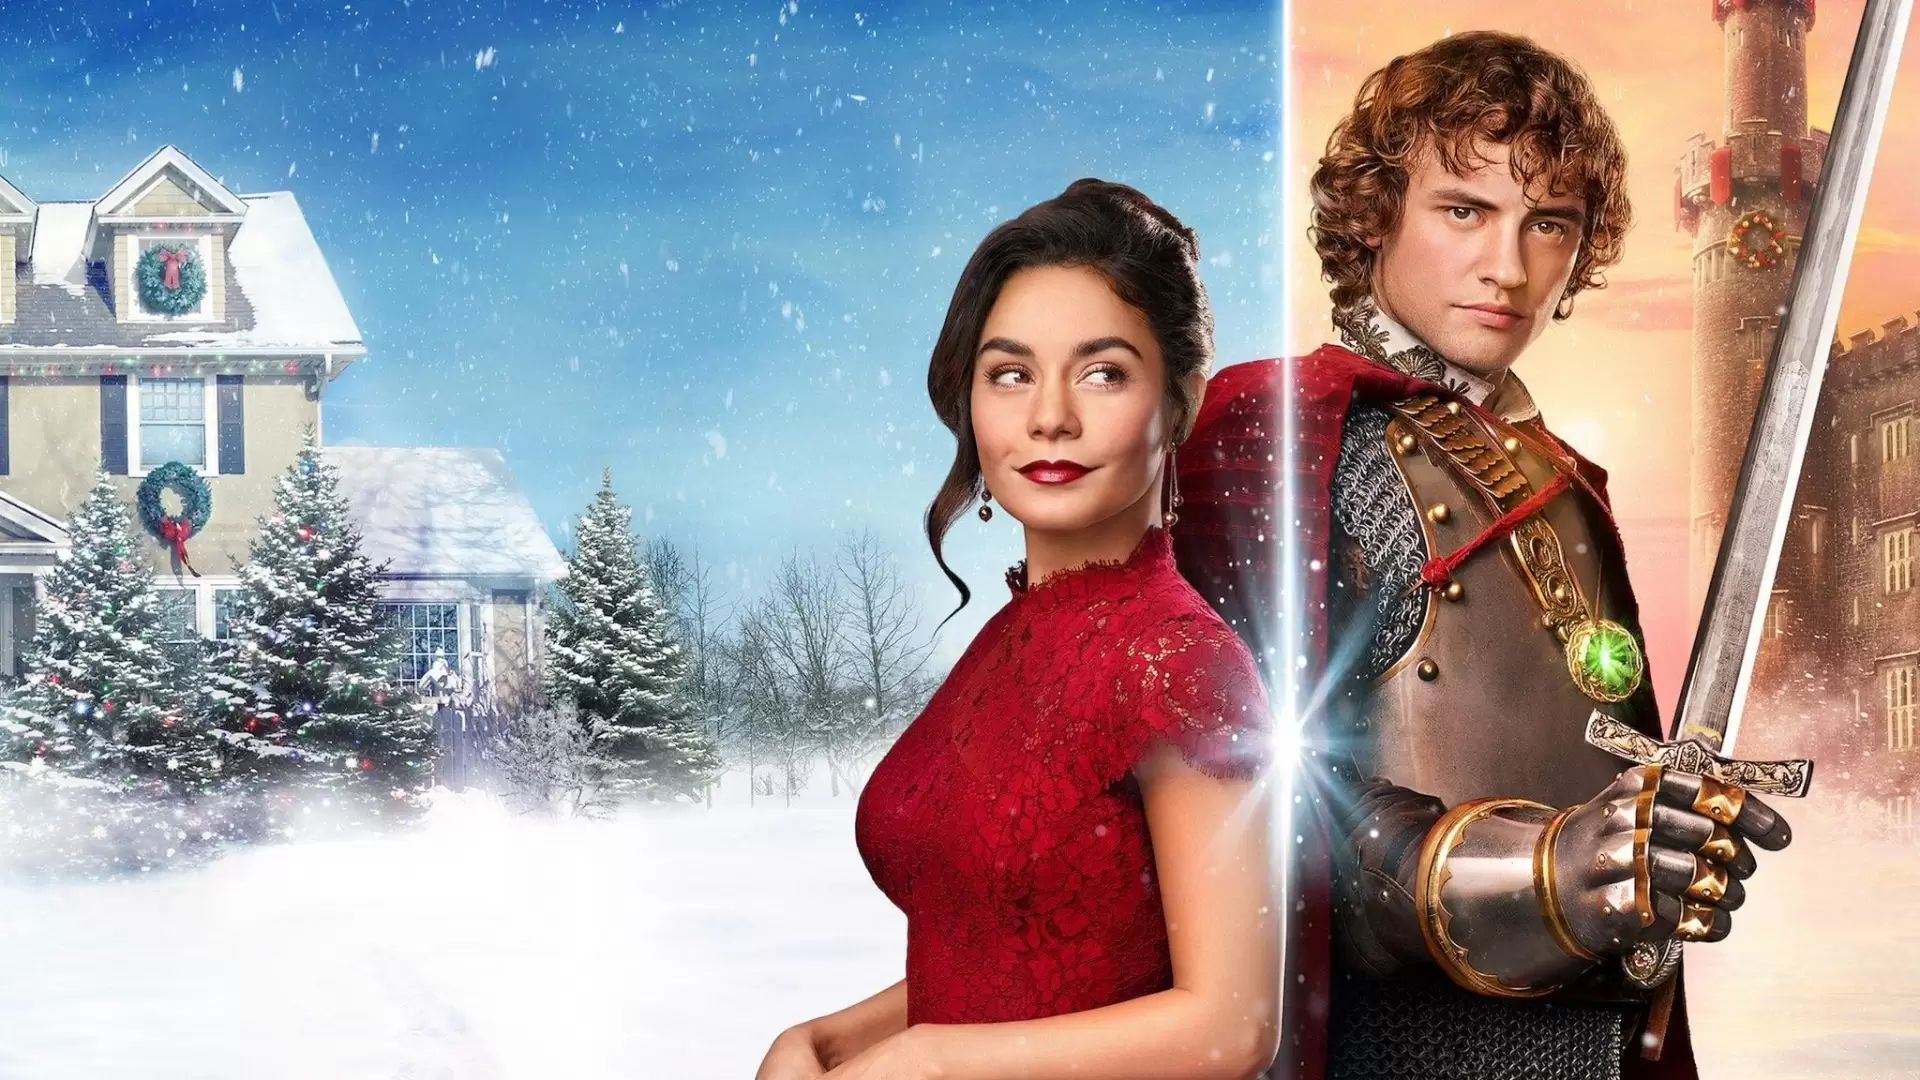 دانلود فیلم The Knight Before Christmas 2019 با زیرنویس فارسی و تماشای آنلاین